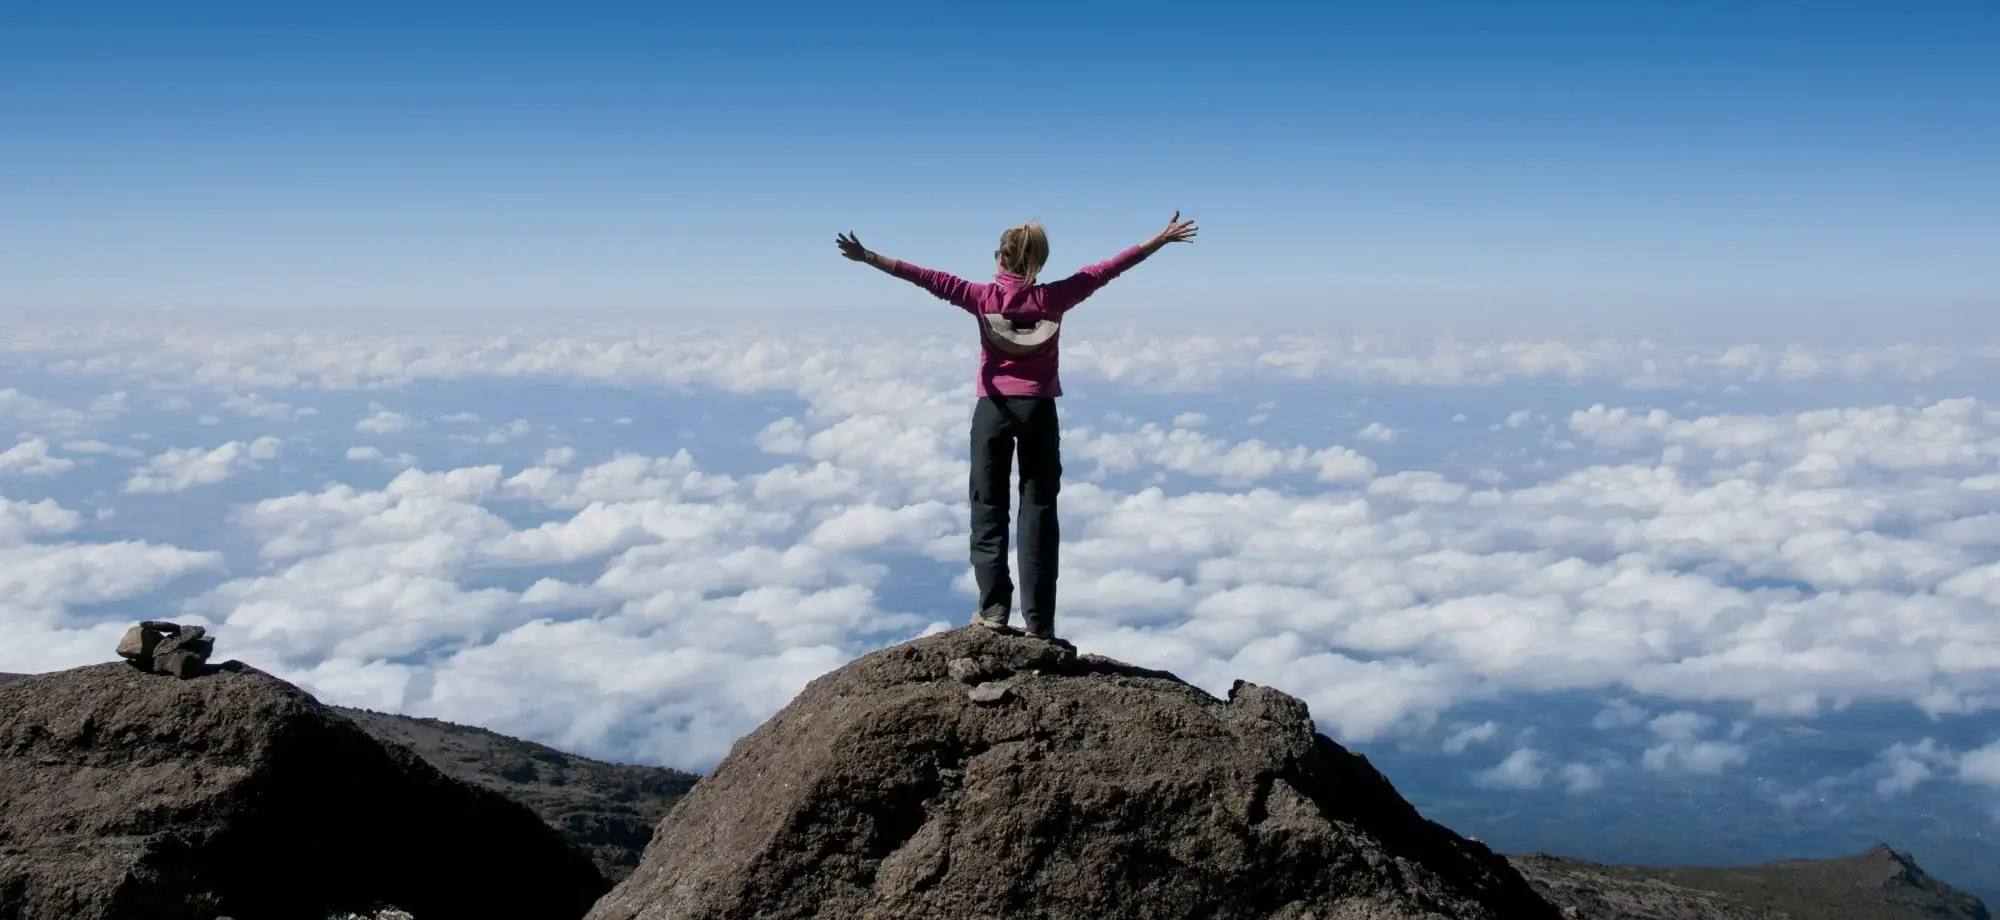 trekker_above_cloud_summit_kilimanjaro_x9fkfm-1